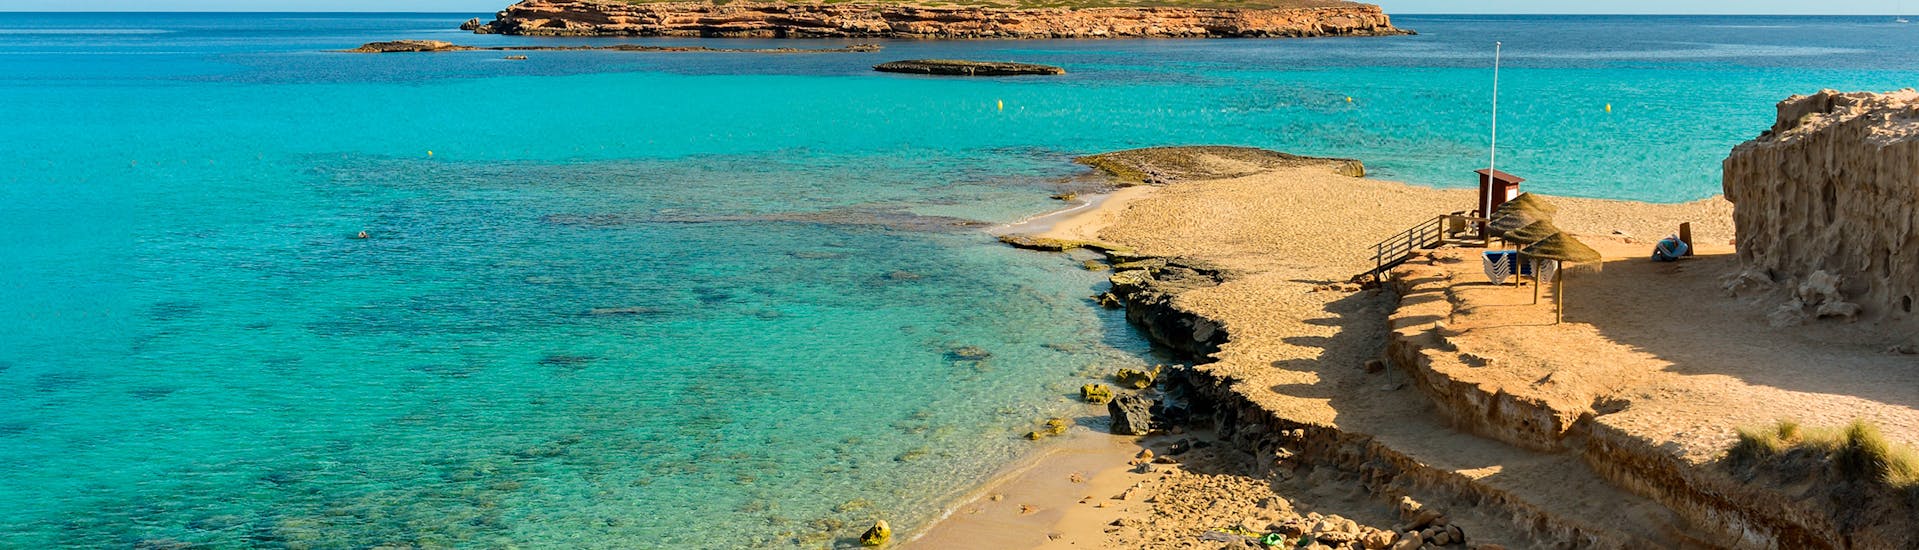 La plage où vous pourrez vous baigner lors de la Balade en catamaran à Cala Salada avec Baignade & Snorkeling avec Capitan Nemo Ibiza.